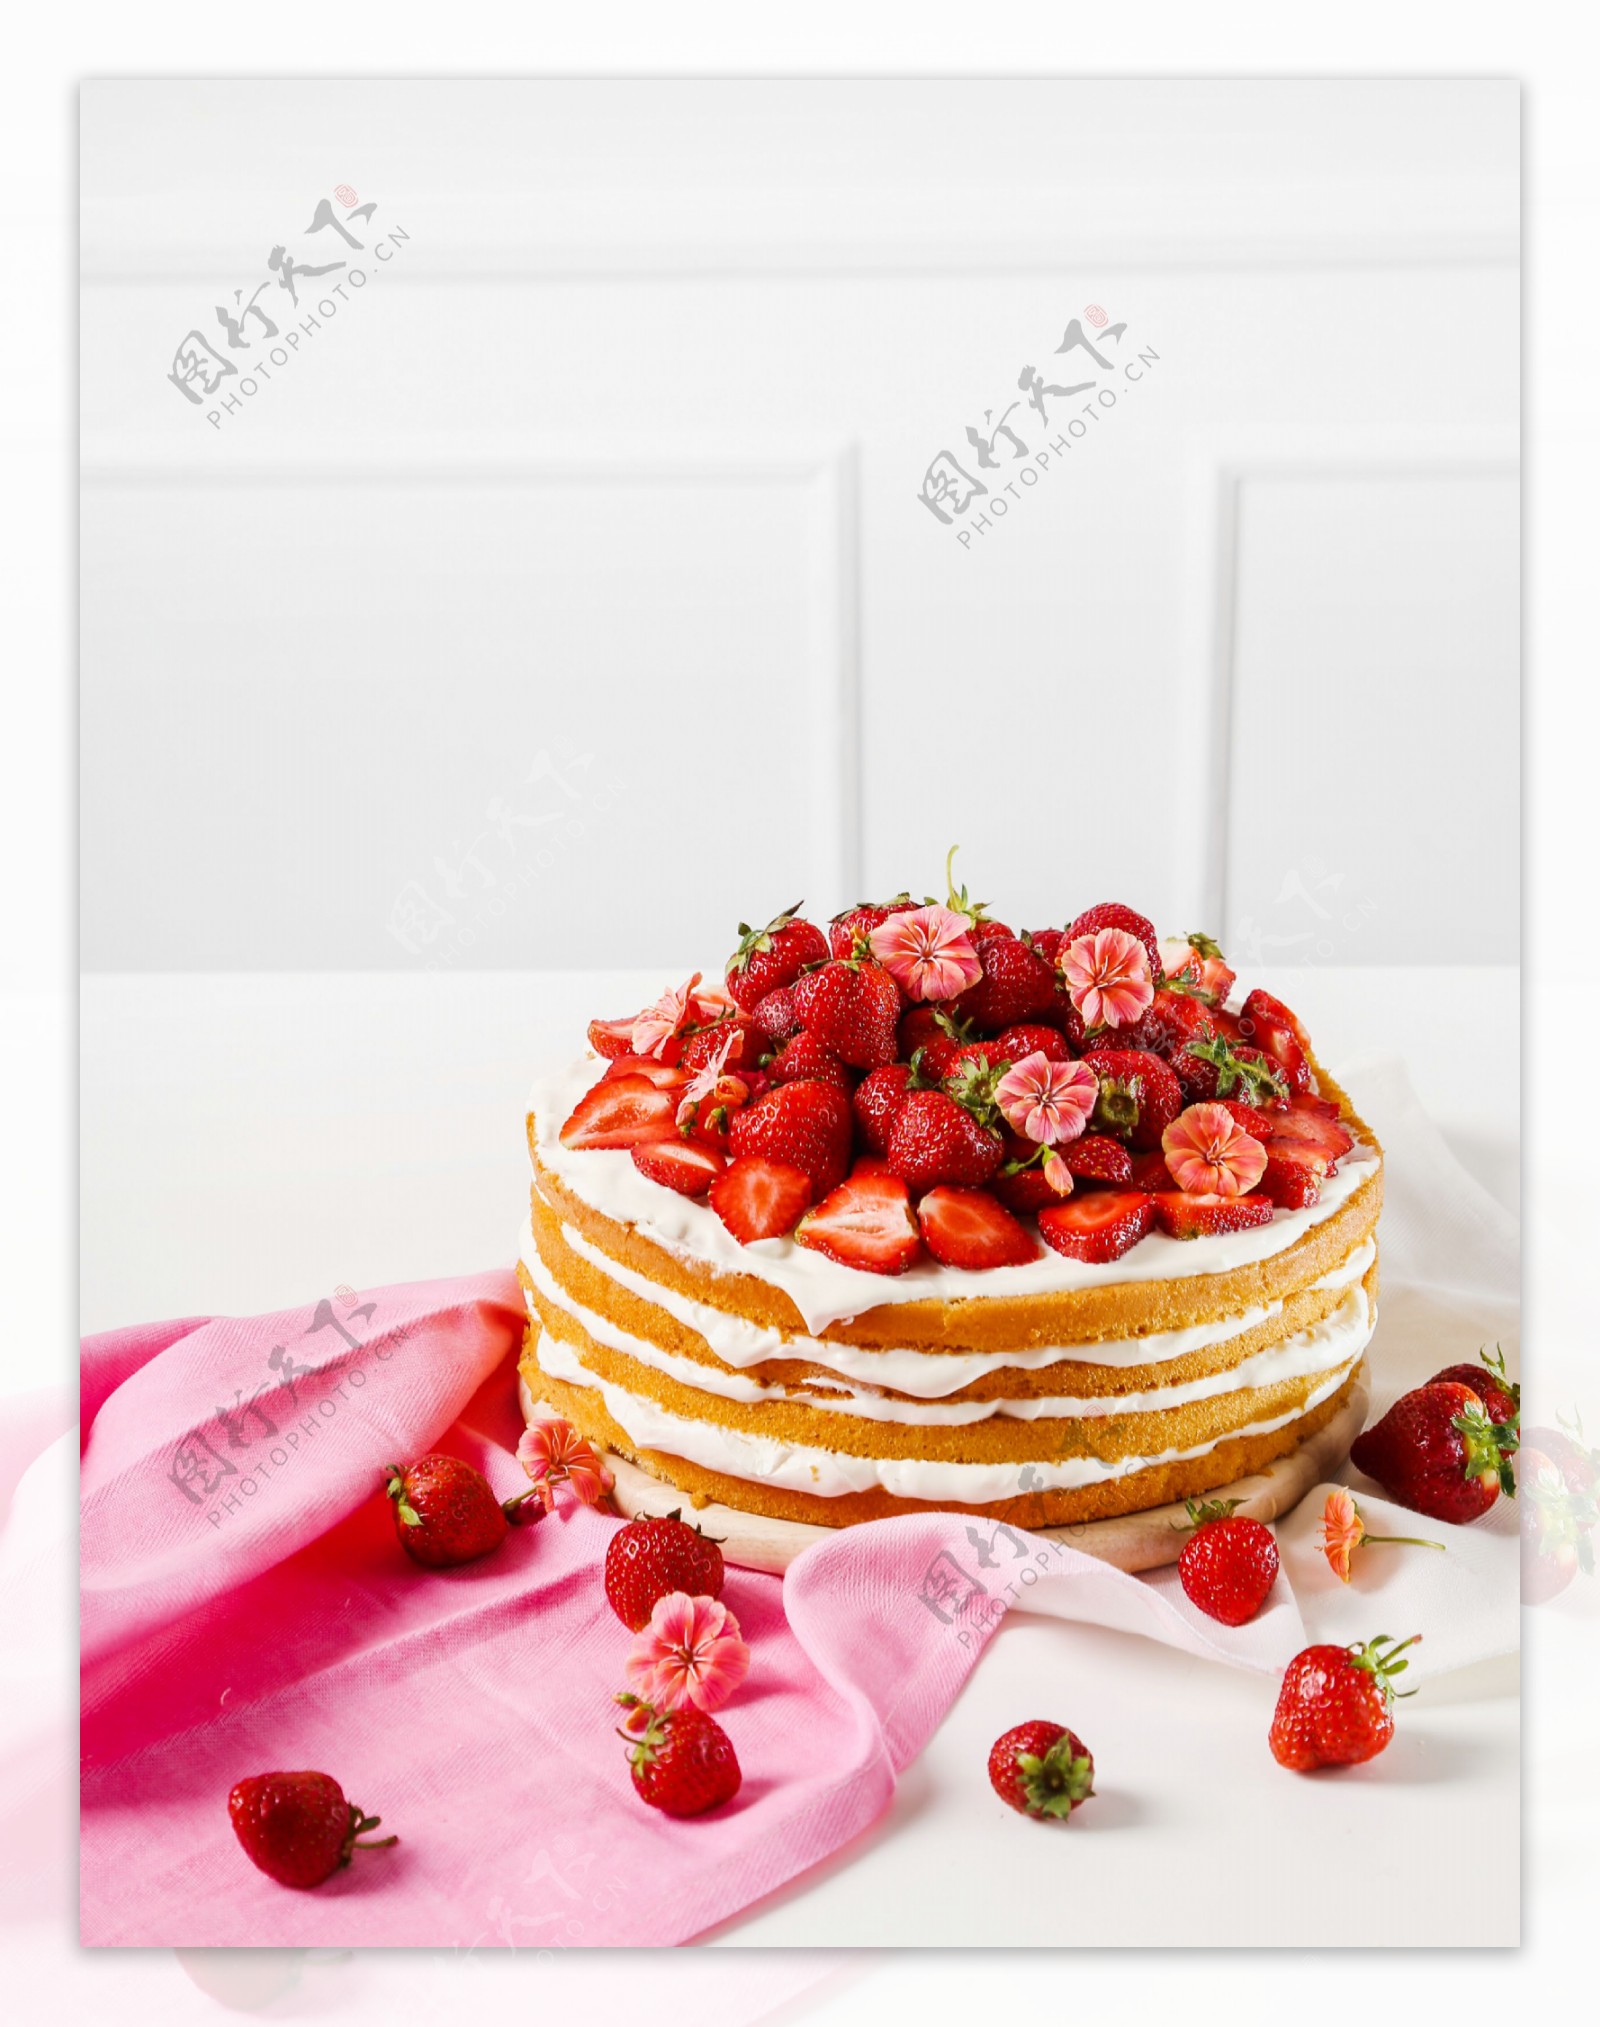 草莓蛋糕美食图片